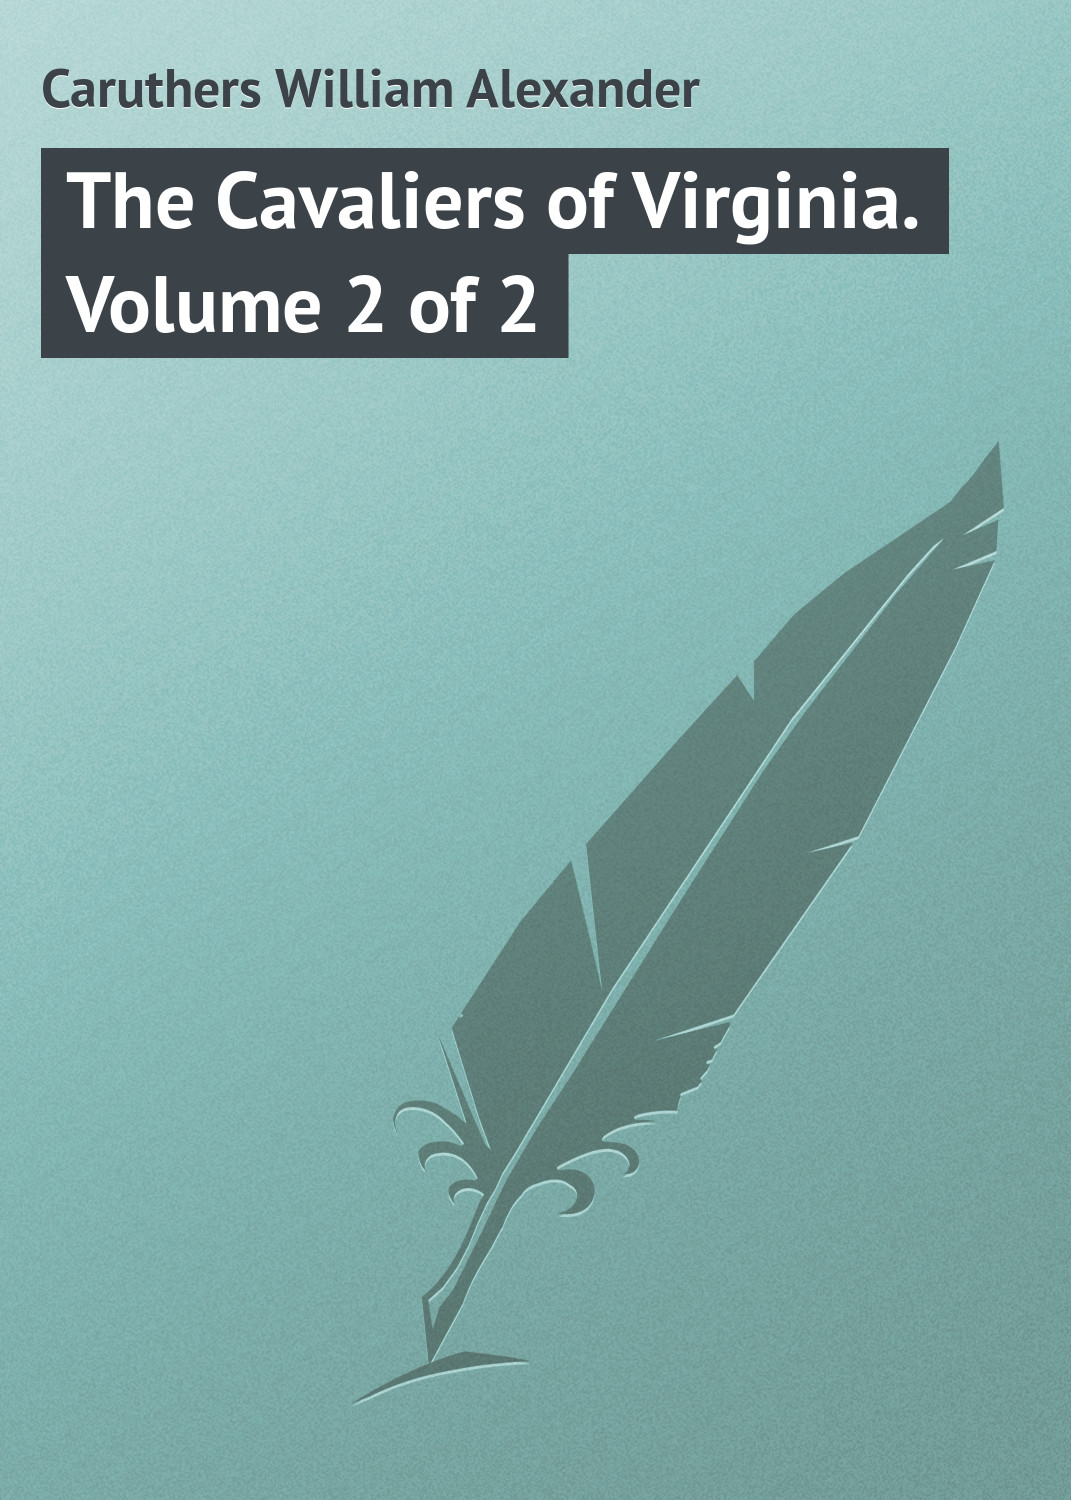 Книга The Cavaliers of Virginia. Volume 2 of 2 из серии , созданная William Caruthers, может относится к жанру Зарубежная классика, Иностранные языки. Стоимость электронной книги The Cavaliers of Virginia. Volume 2 of 2 с идентификатором 23146323 составляет 5.99 руб.